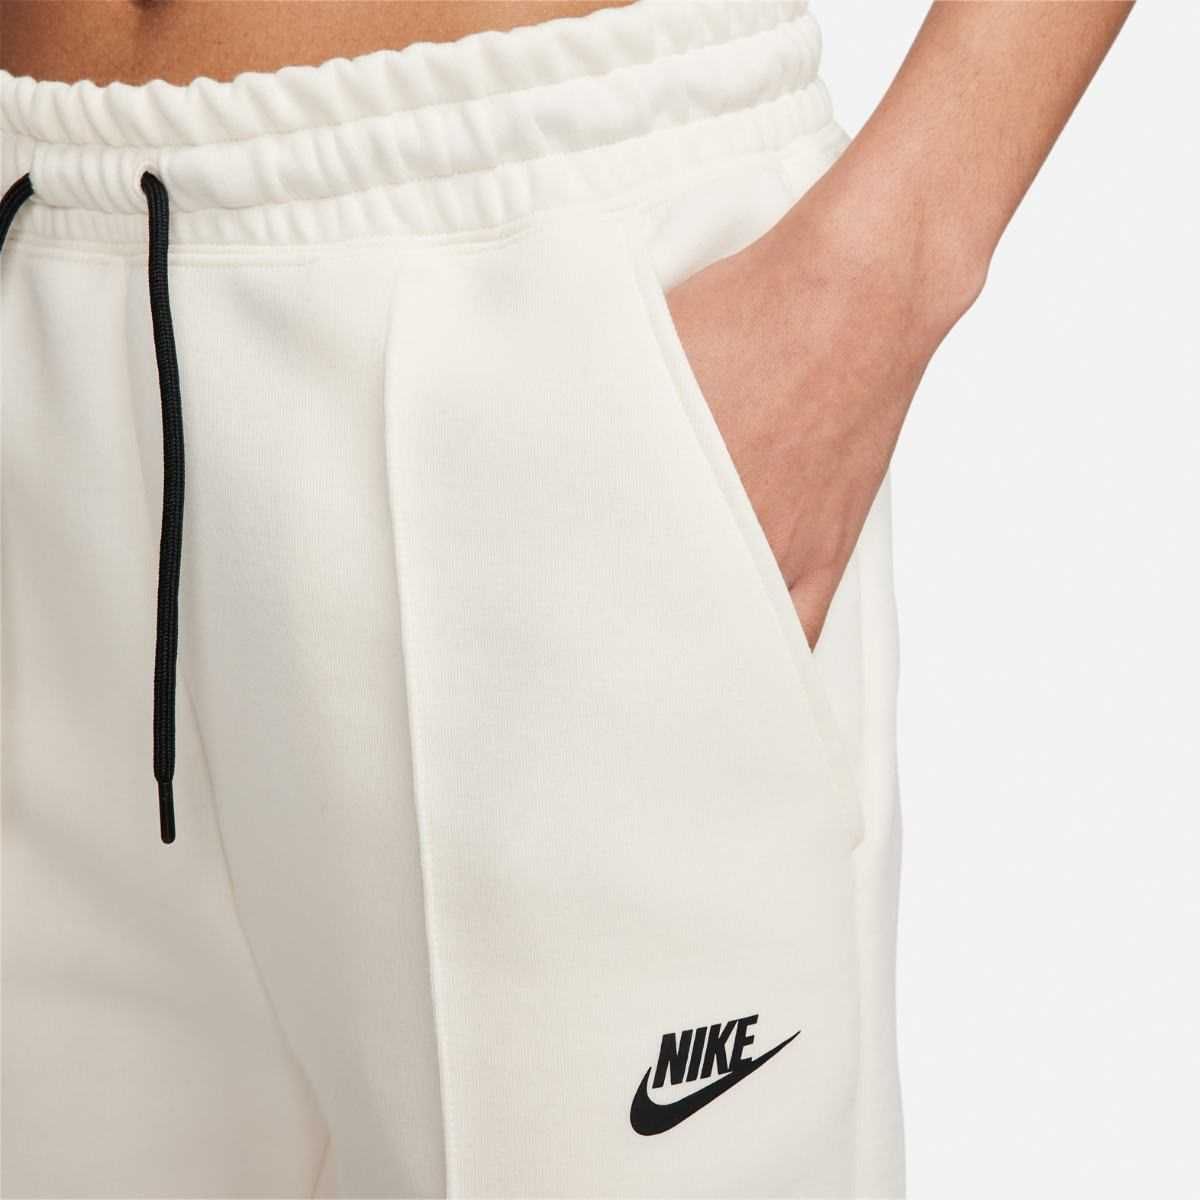 Спортивний костюм Nike |FB8338-110&FB8330-110| Оригінал